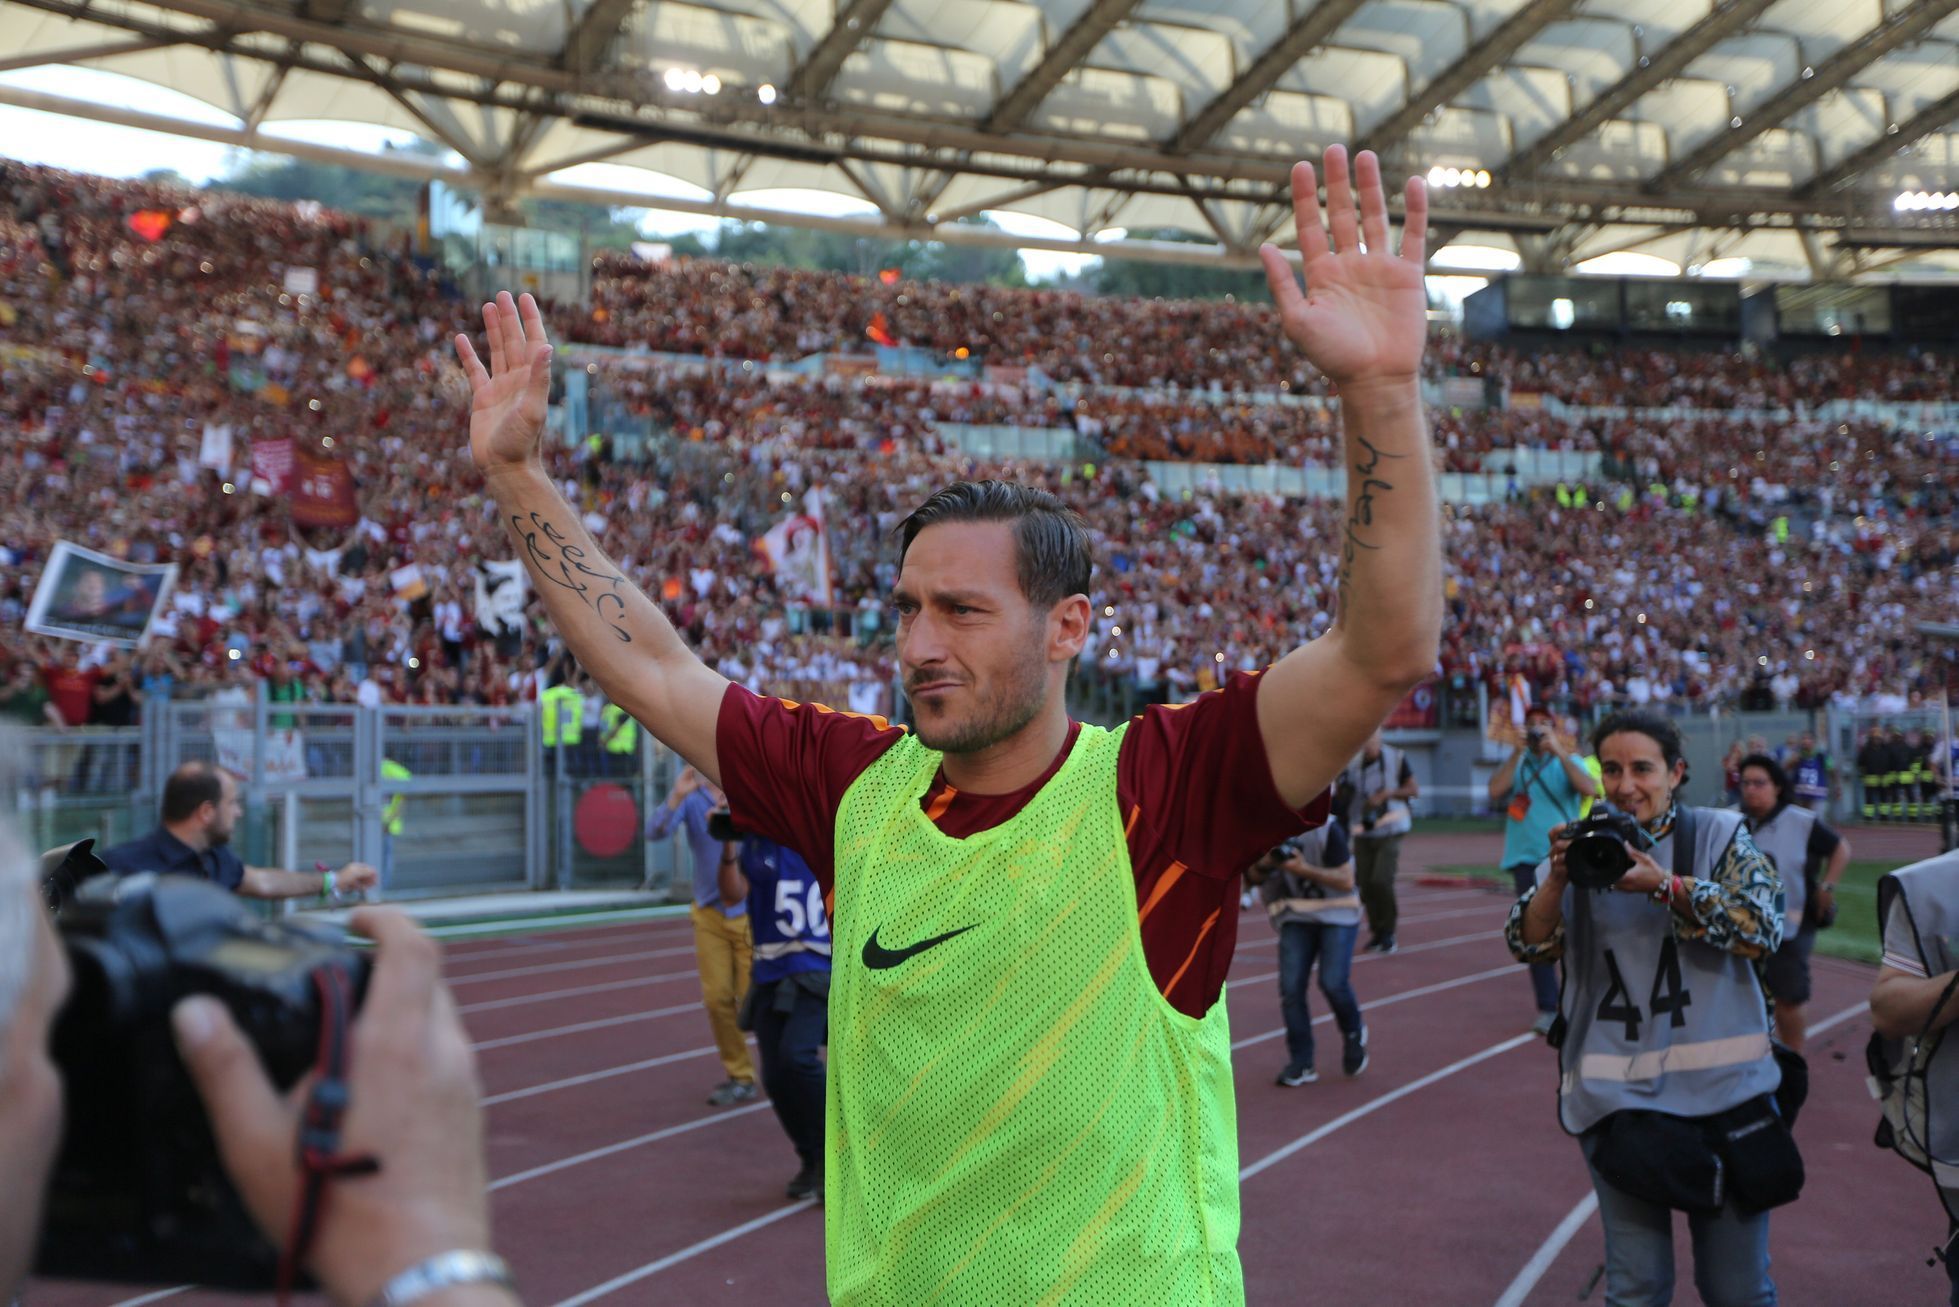 Francesco Totti se loučí s AS Řím v zápase s Janovem